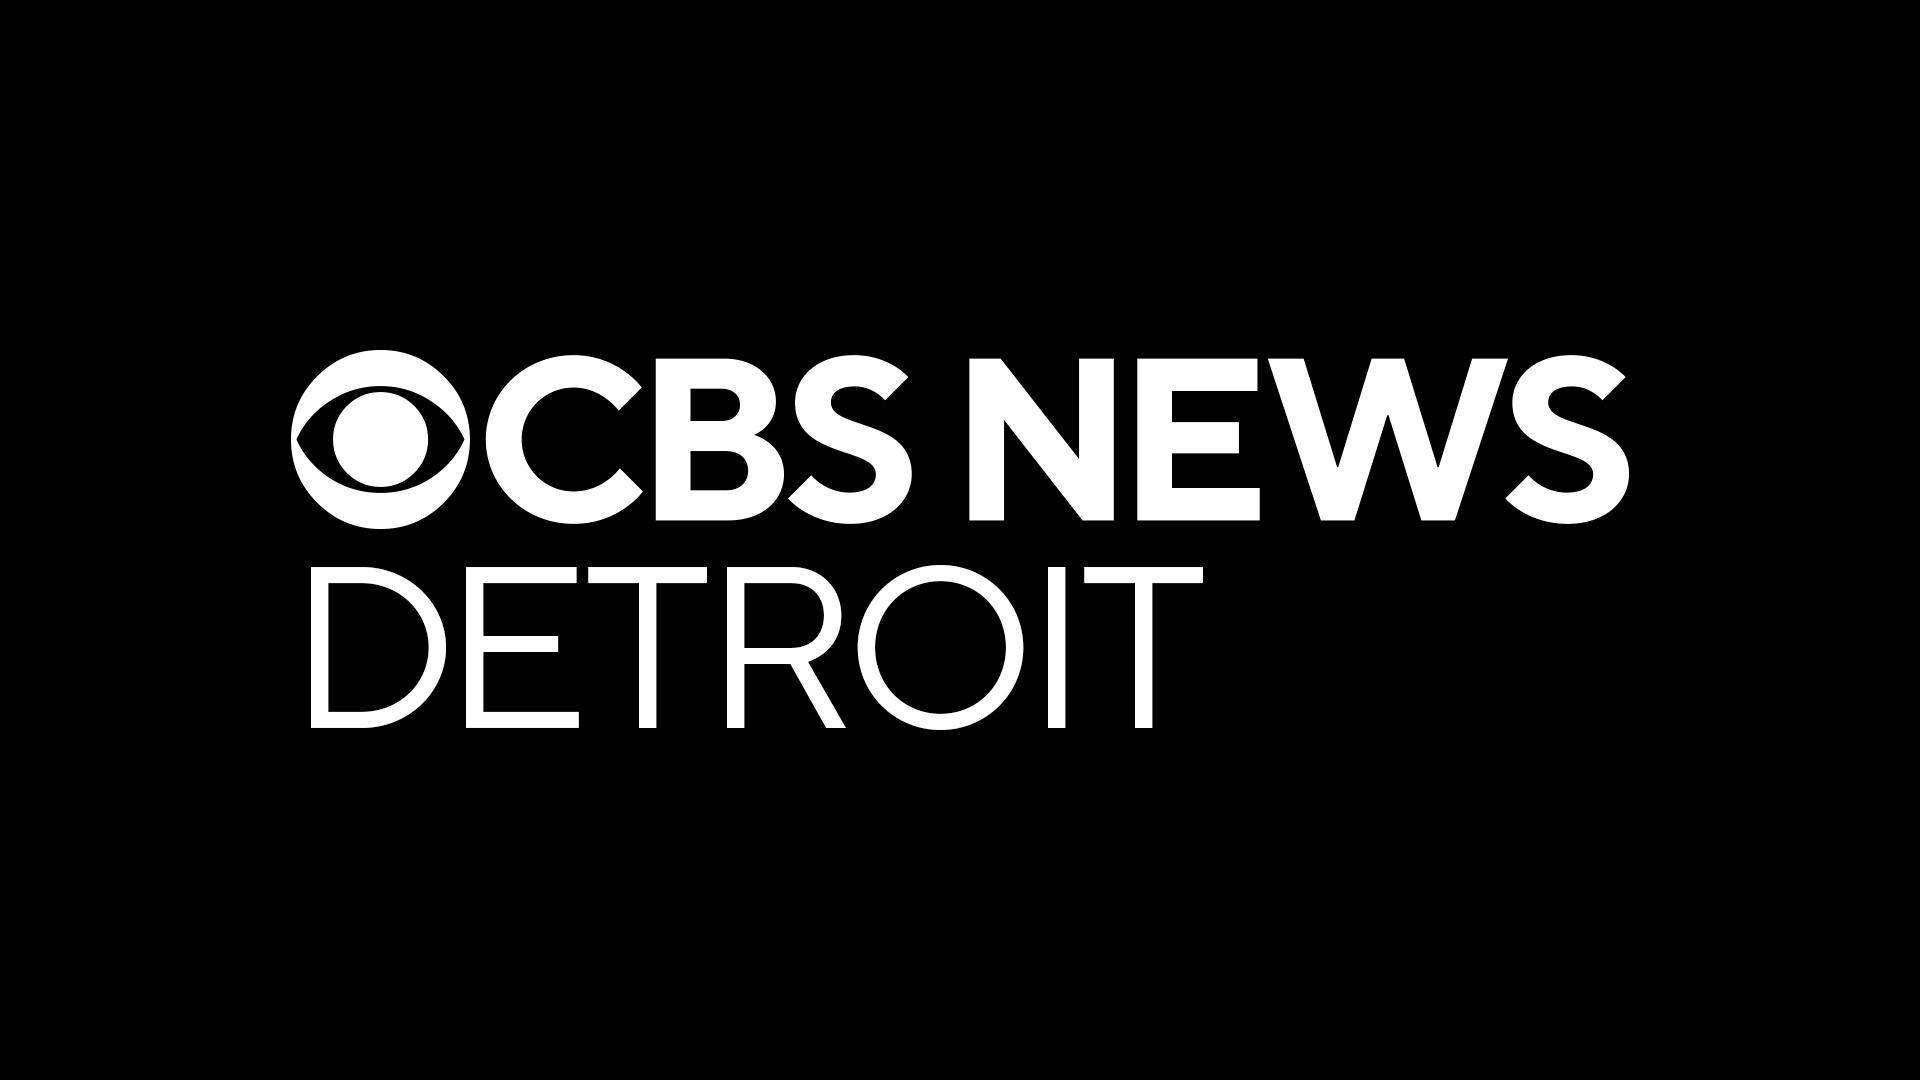 cbs-news-detroit-1920x1080.jpg 